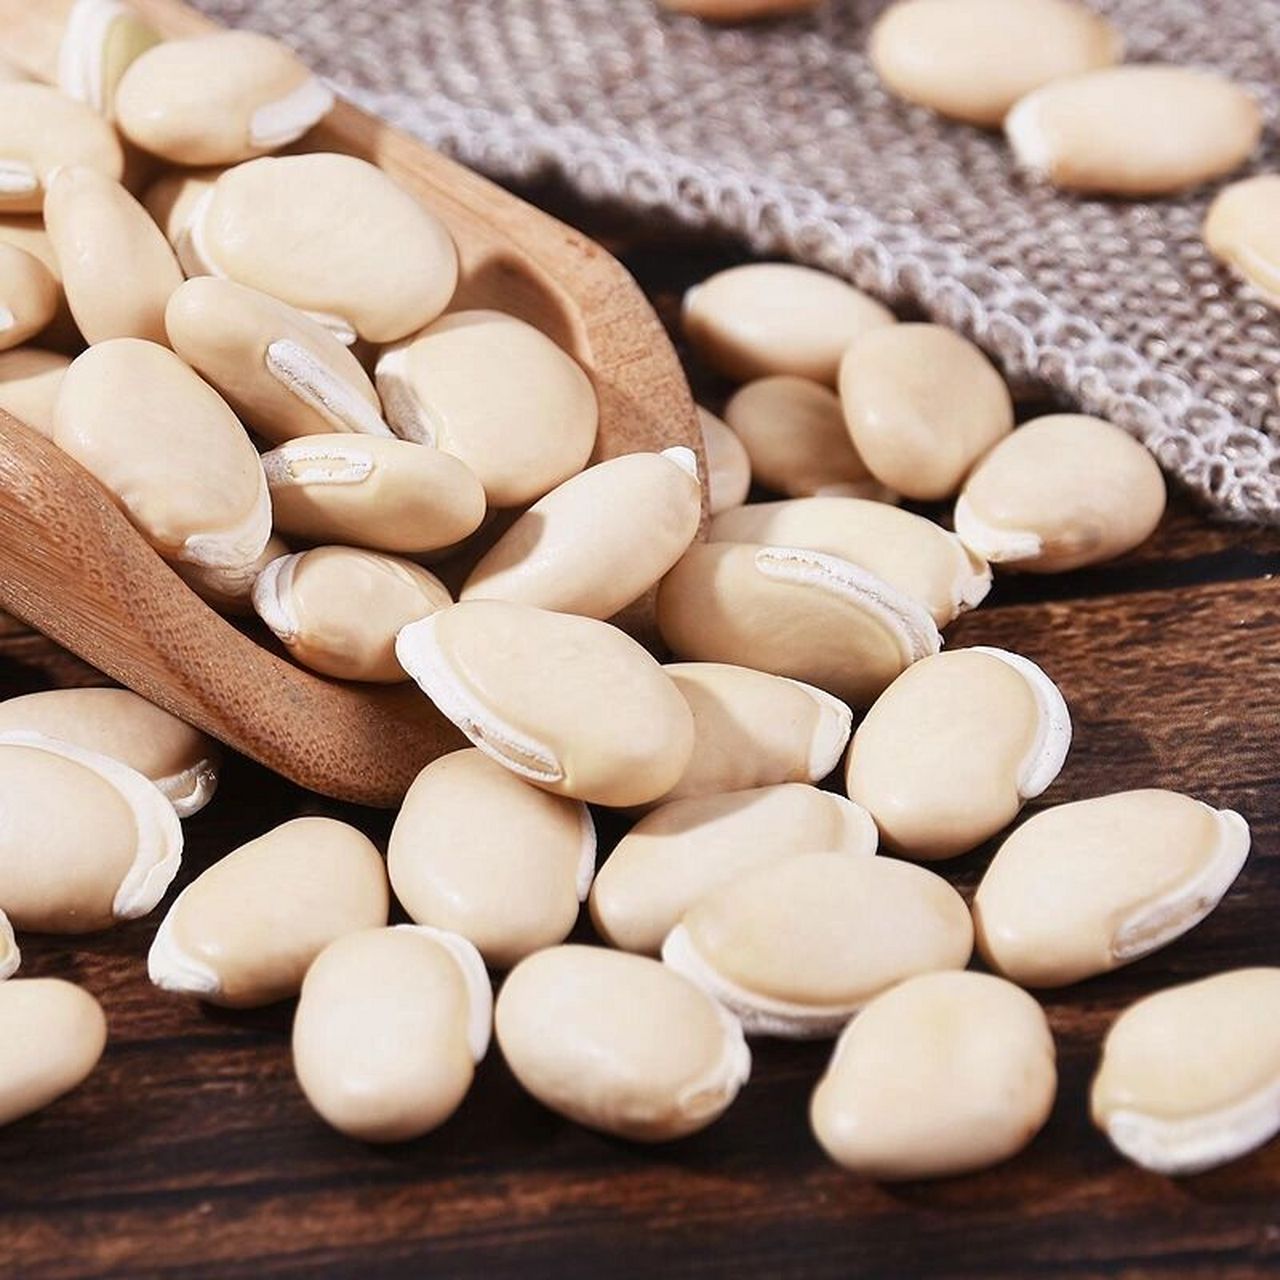 白扁豆可以用于治疗脾胃虚弱,大便泄泻,白带过多,食欲不振,胸闷